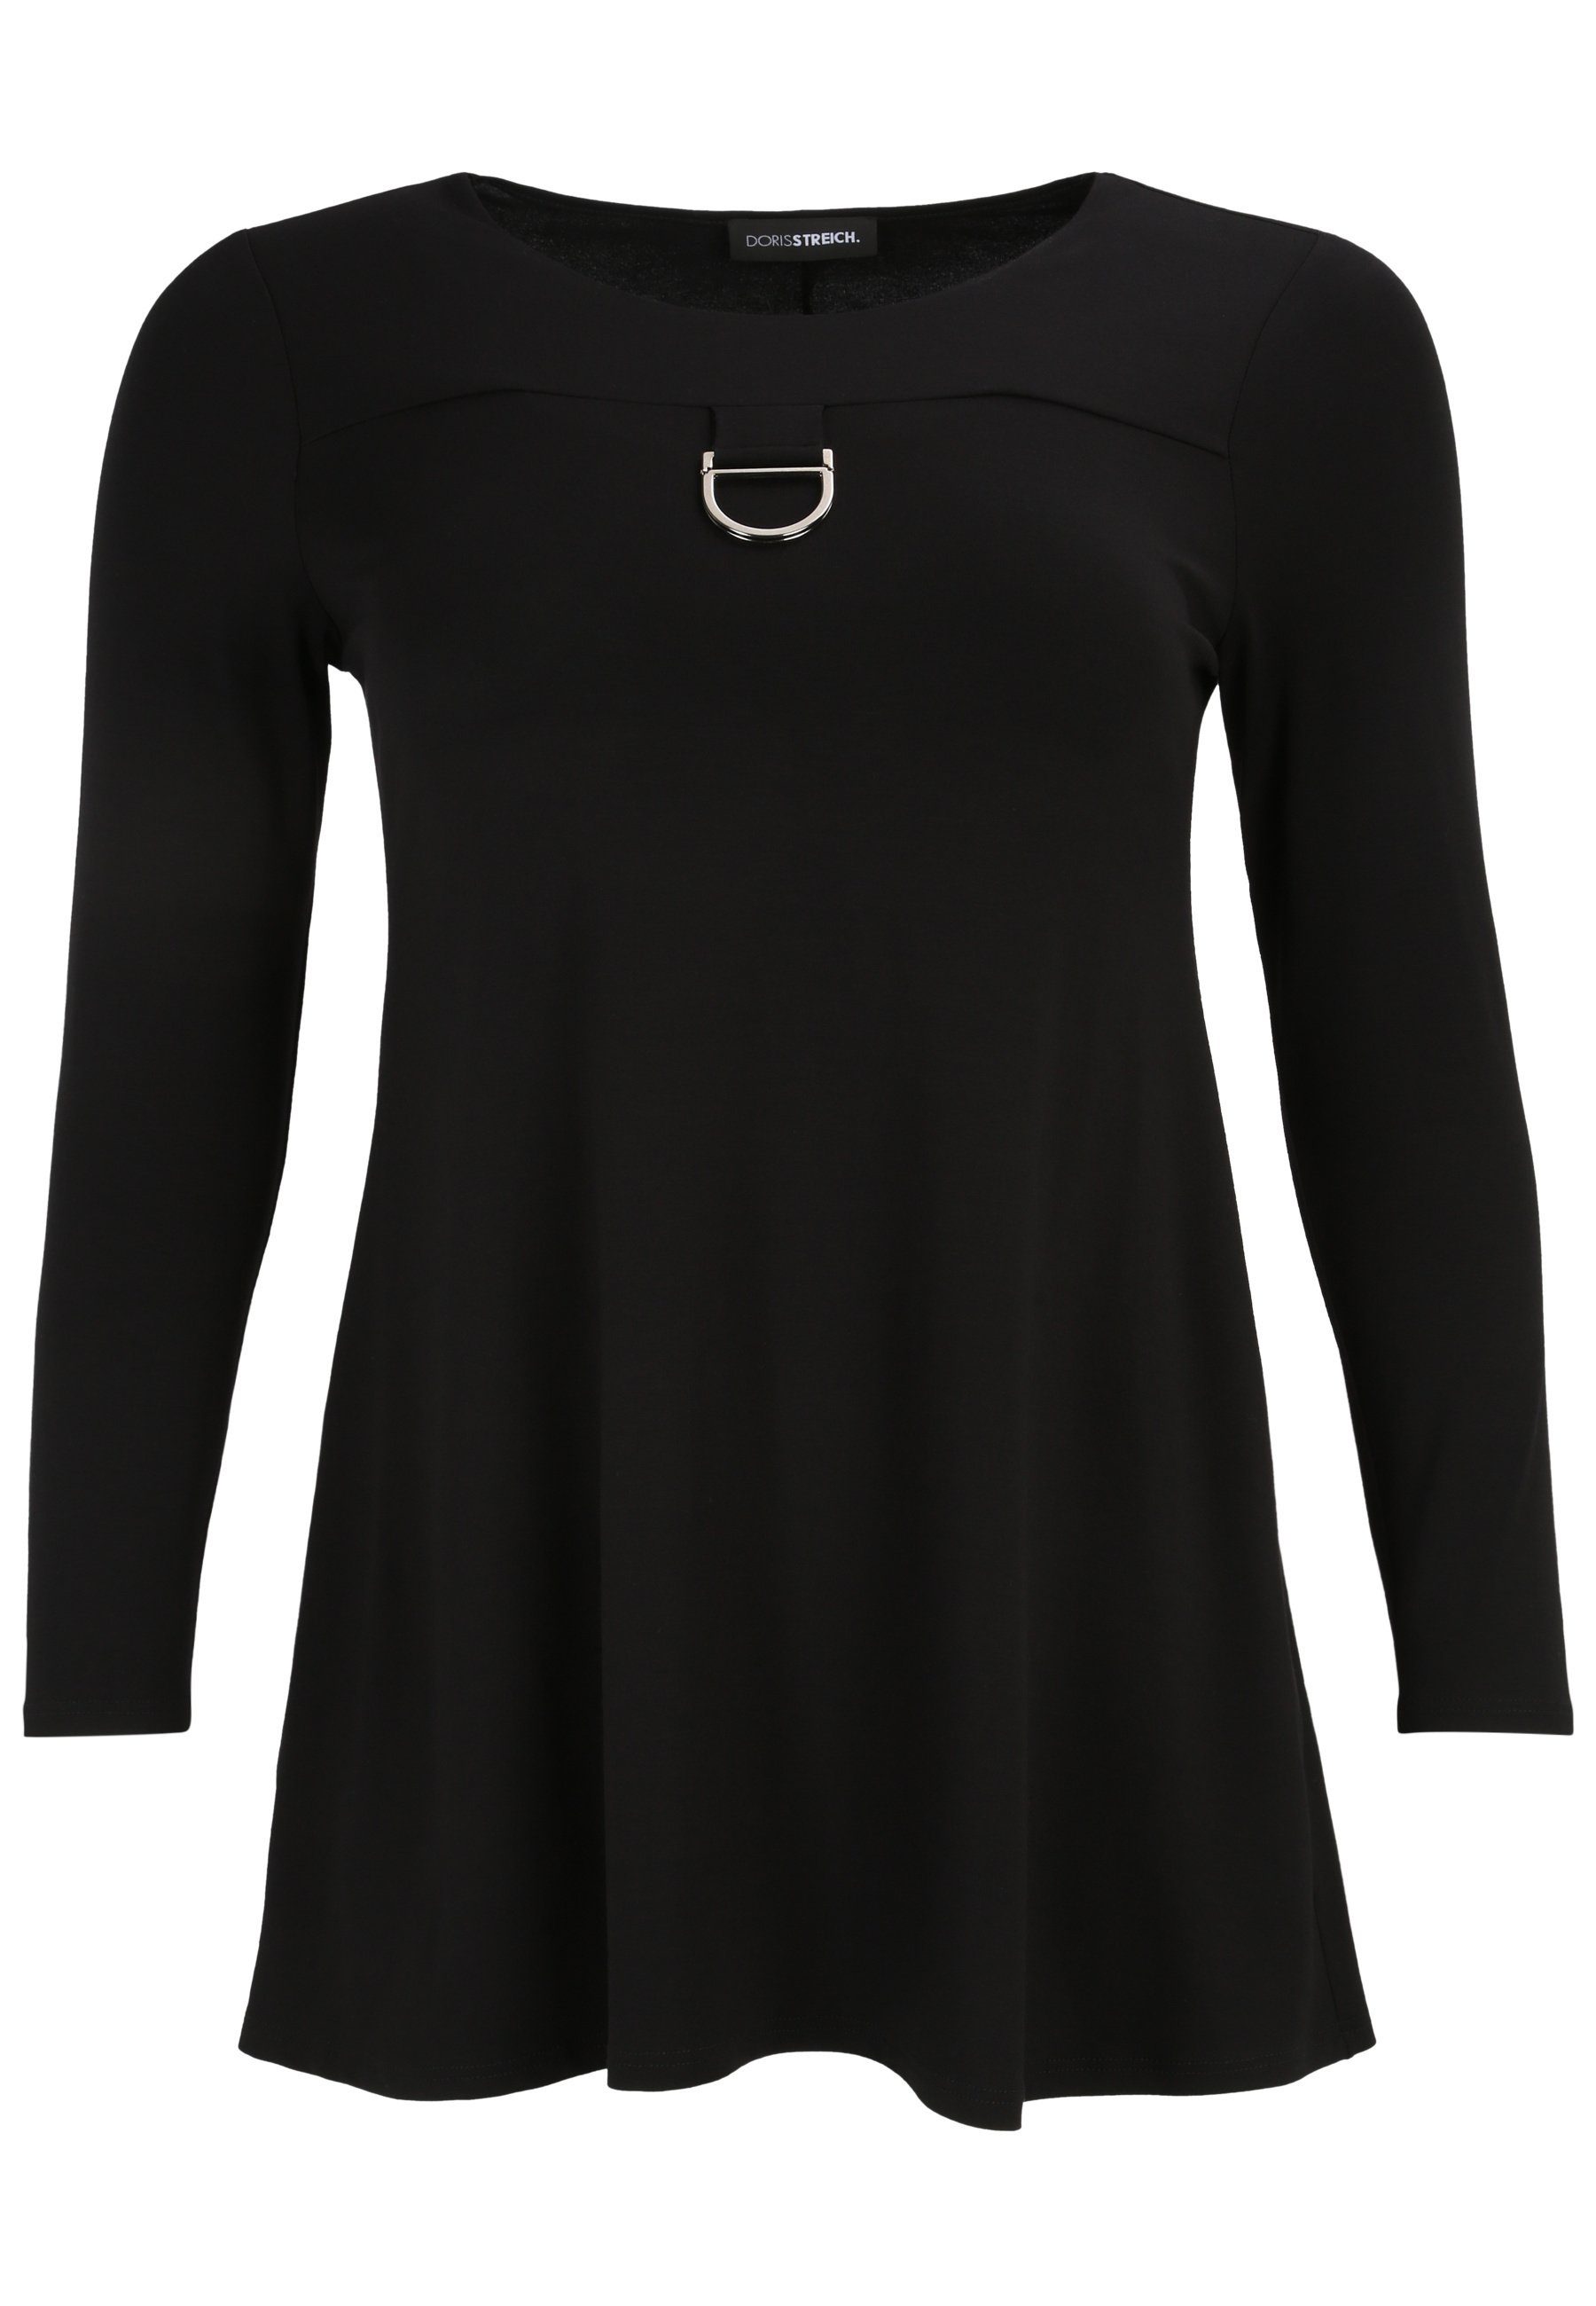 Doris Streich Longbluse Long-Shirt mit messingfarbenem Zierteil mit modernem Design